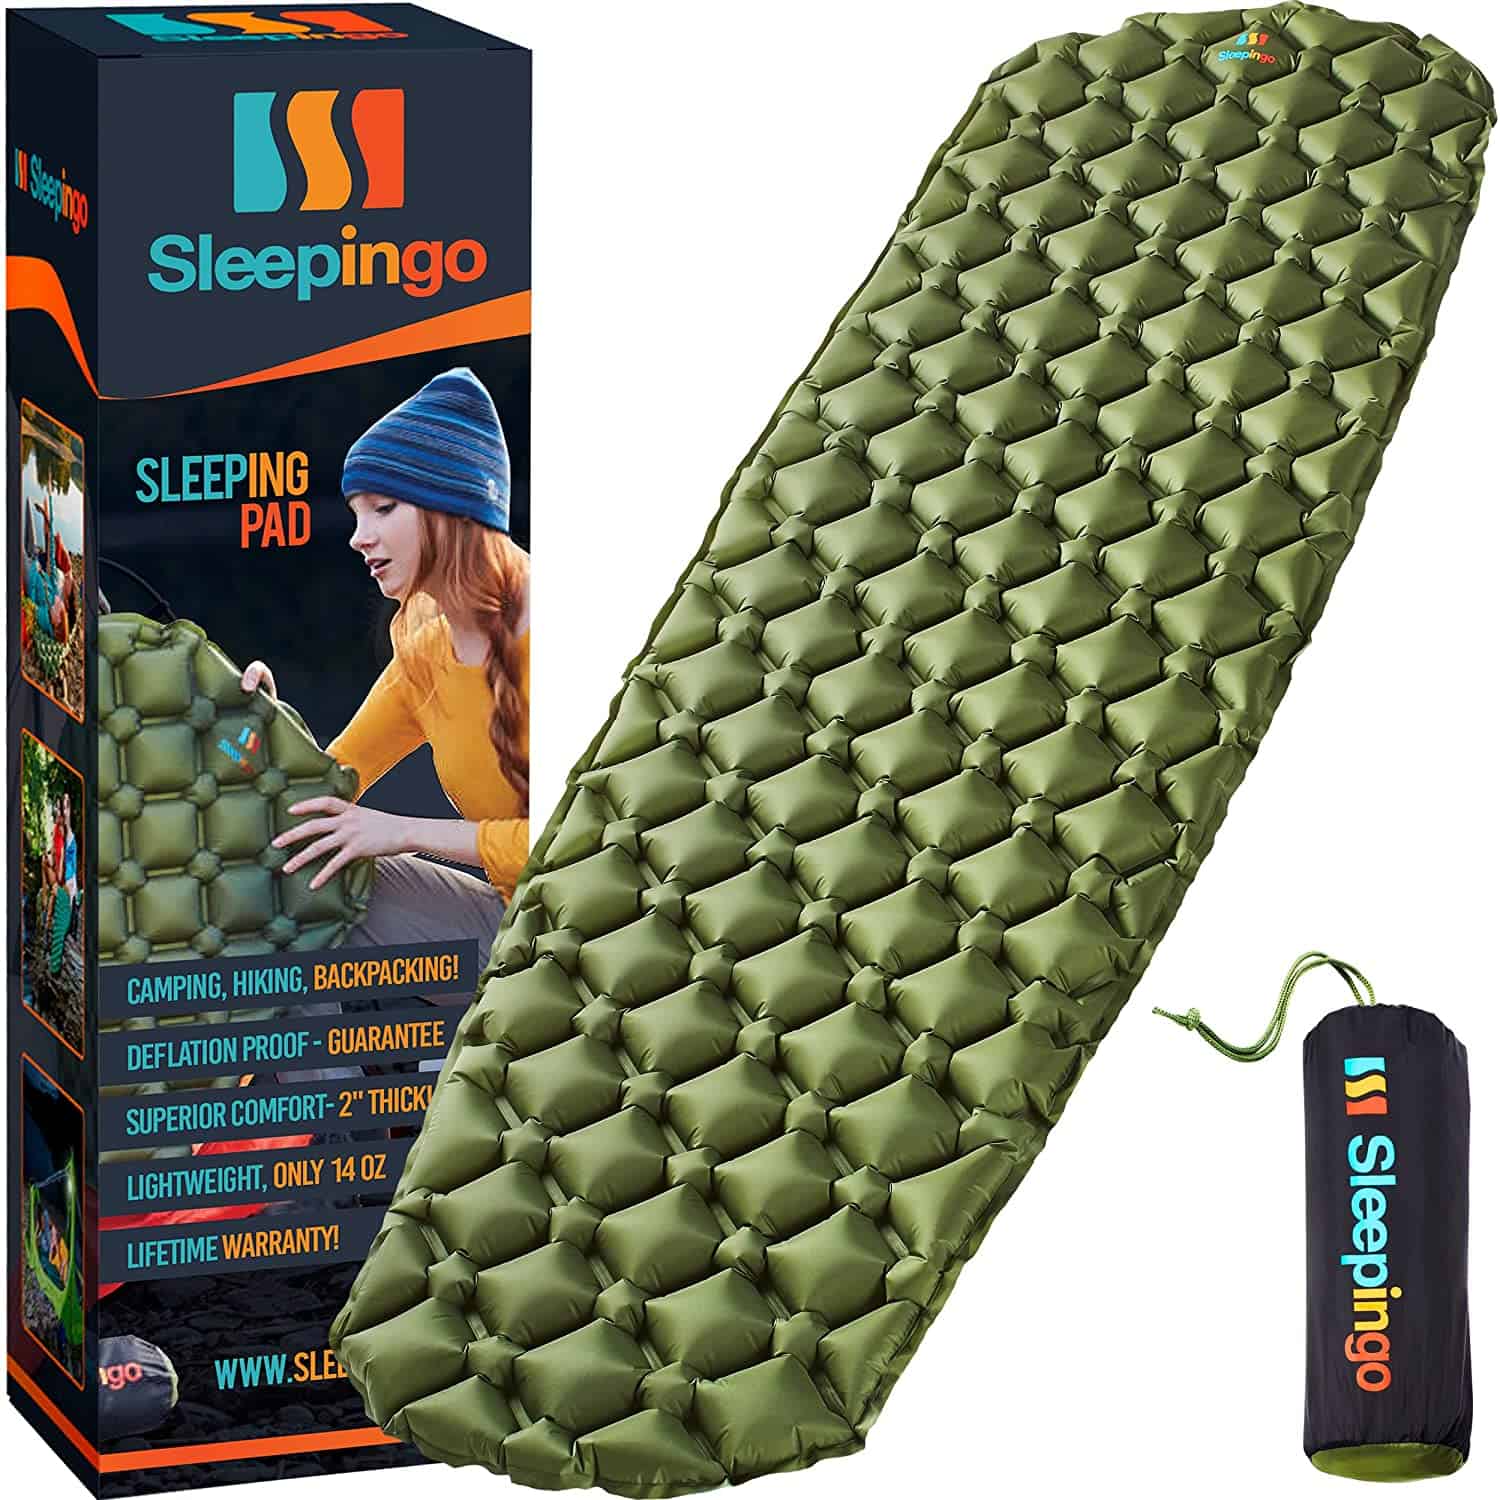 Sleepingo Sleeping Pad for Side Sleepers